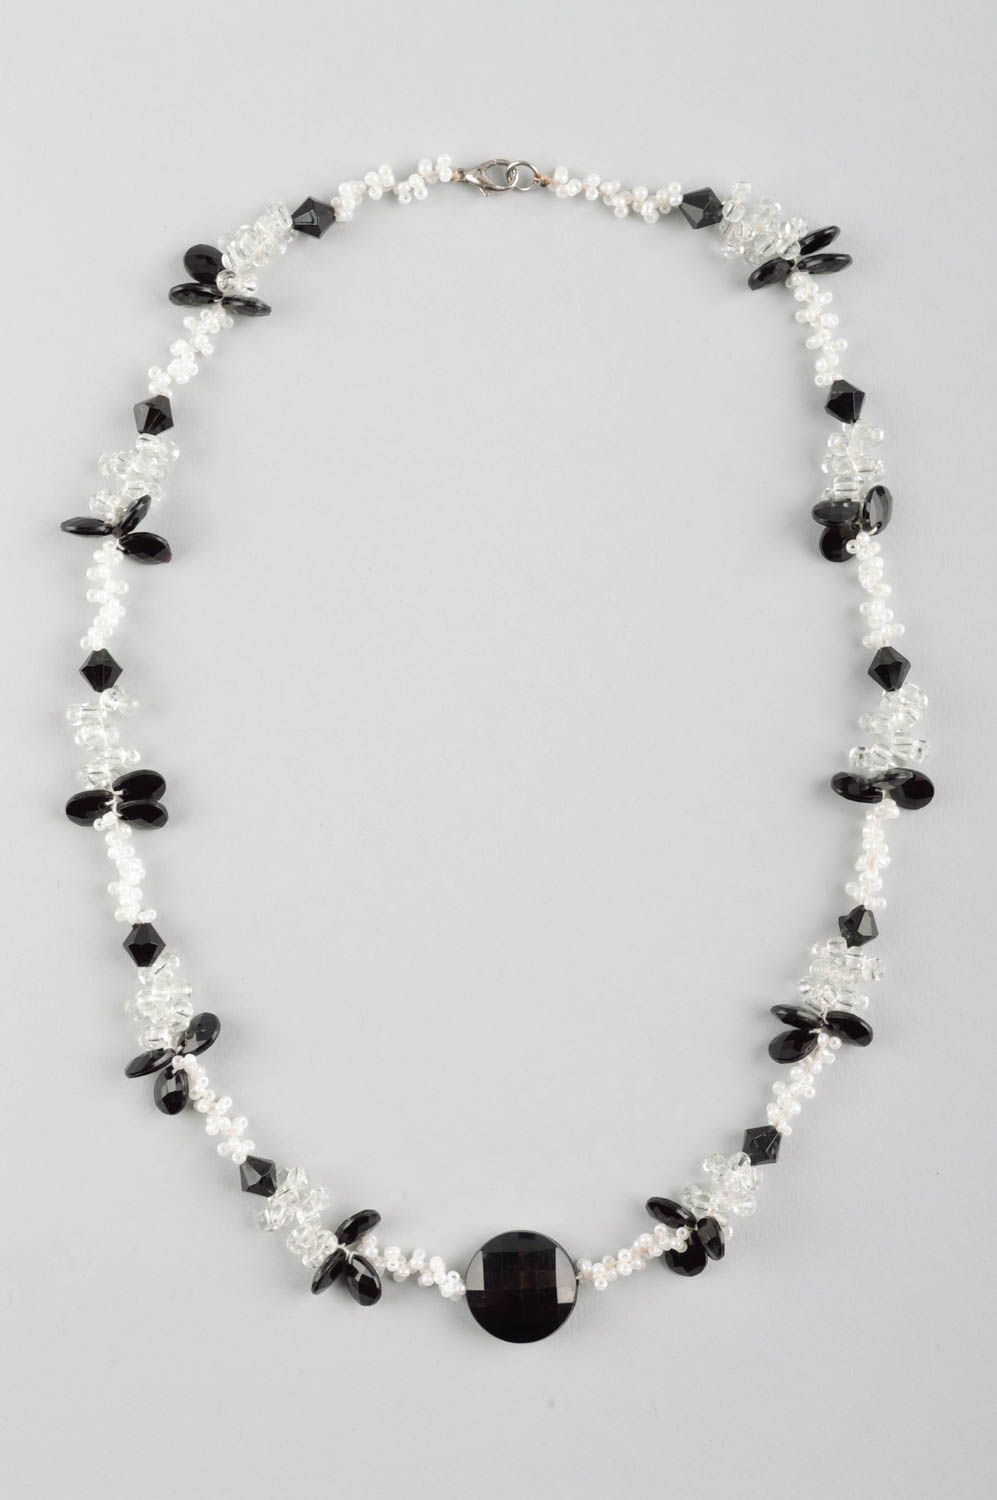 Бусы ручной работы украшение на шею украшение из бисера и кристаллов черно-белое фото 2